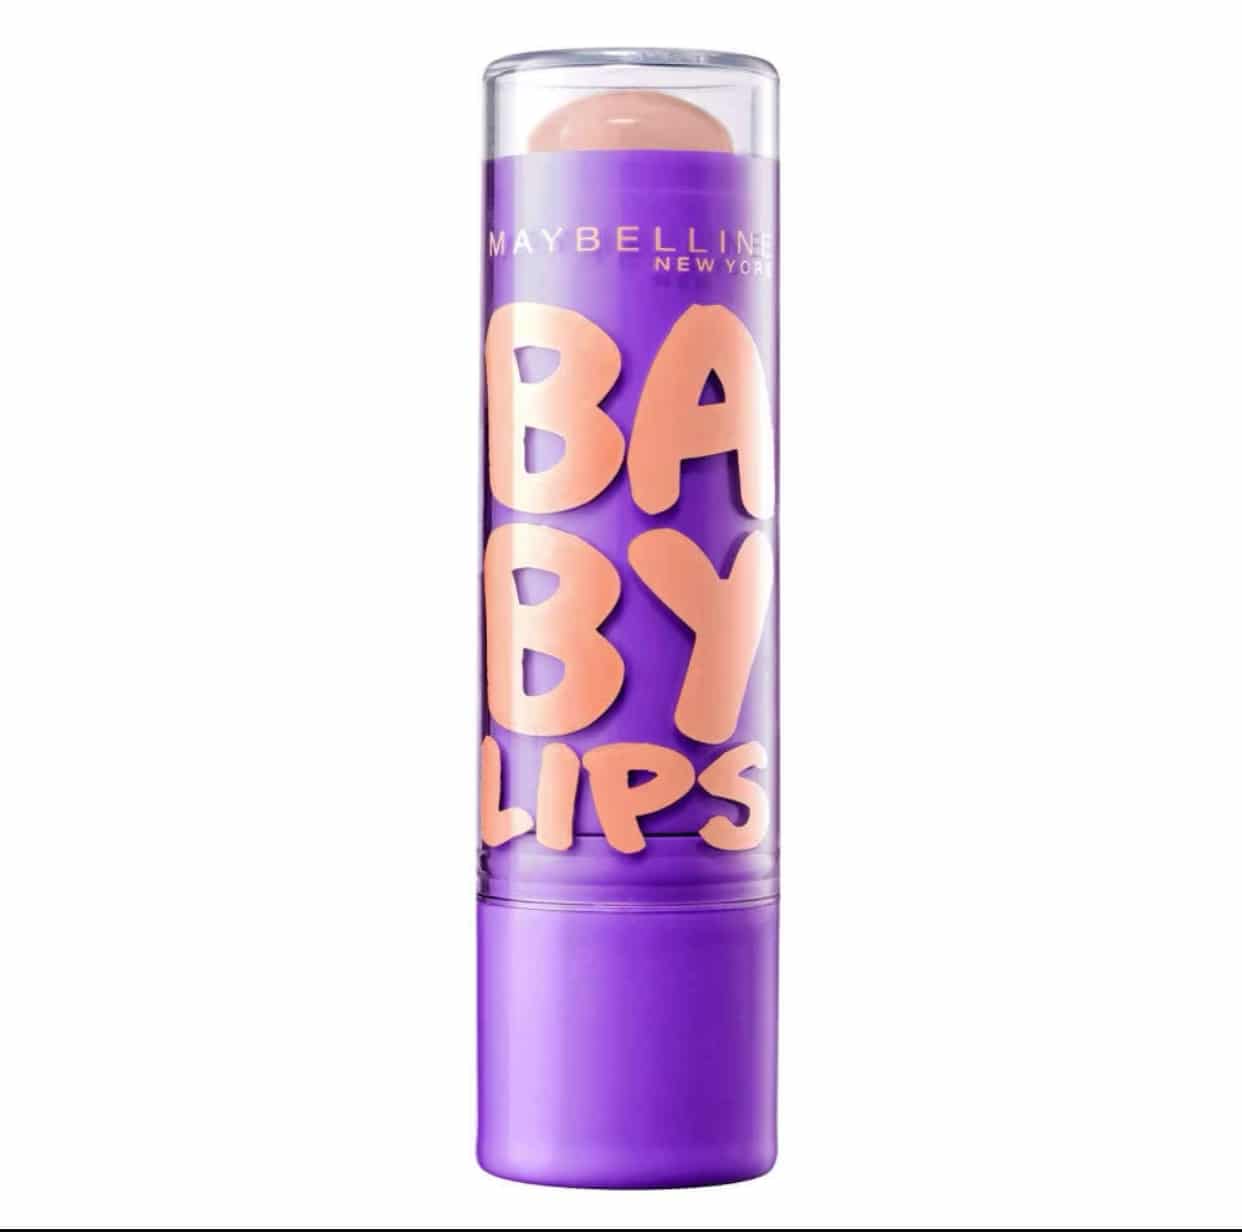 Lippenpflege, Maybelline gfür 2,79€) Pflegebalsam 1,46€(statt New Feuchtigkeitsspendender Baby York mit Peach Lips, LSF20, 5 Kiss,